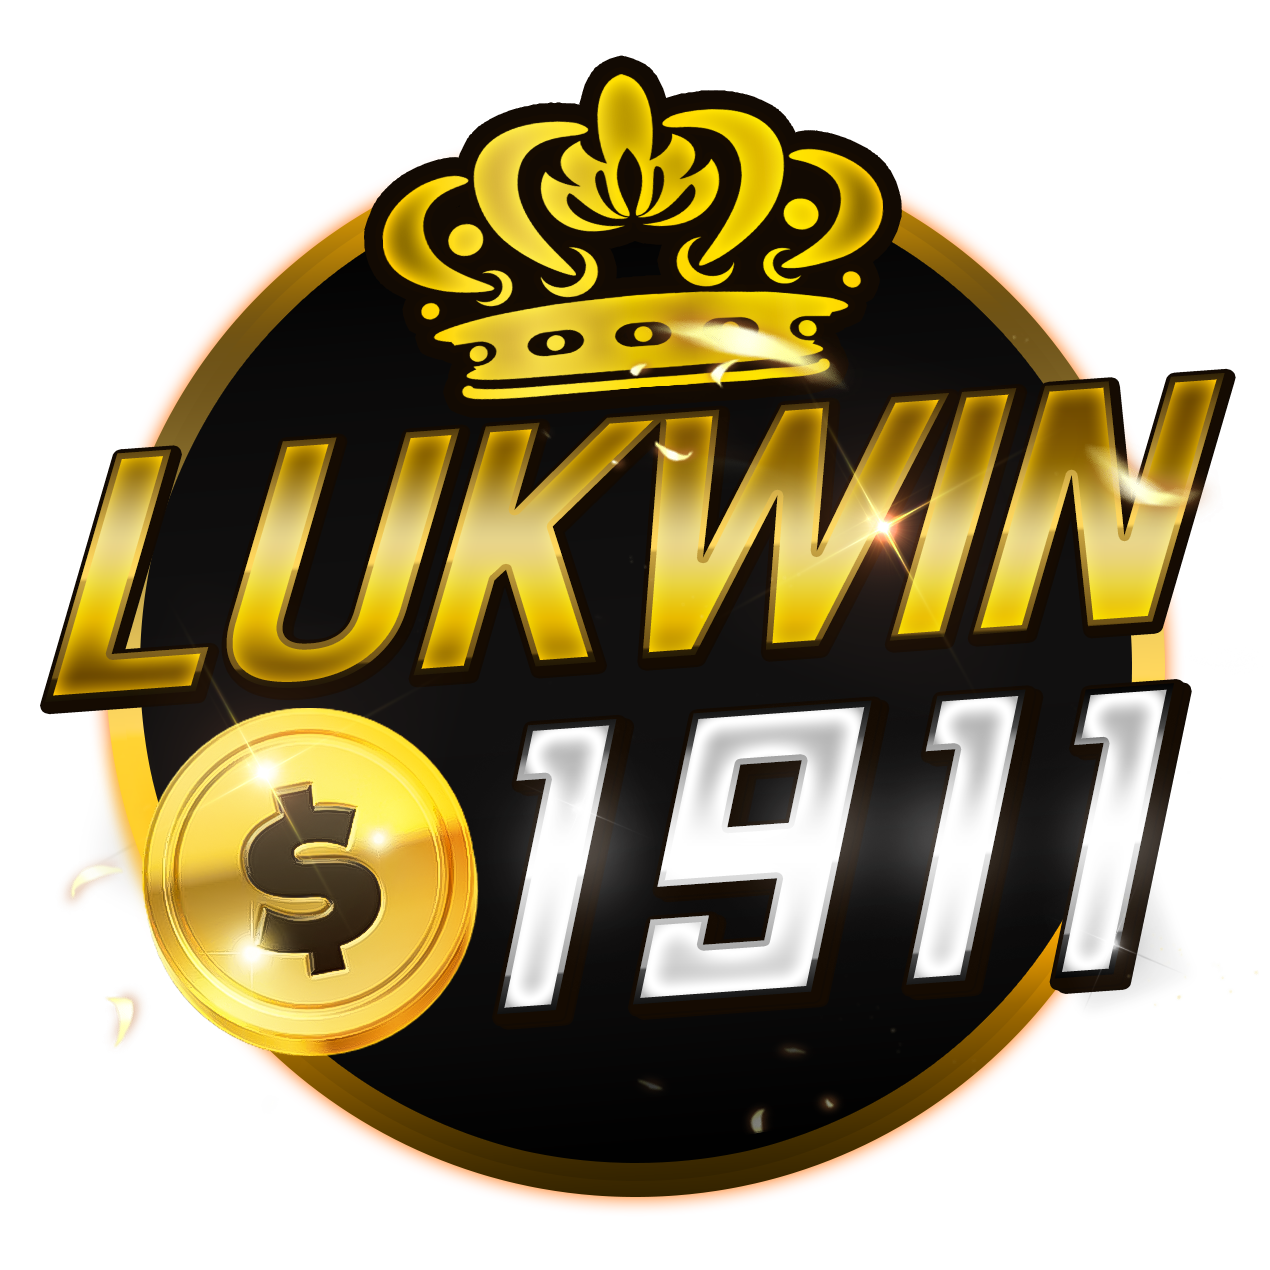 lukwin1911